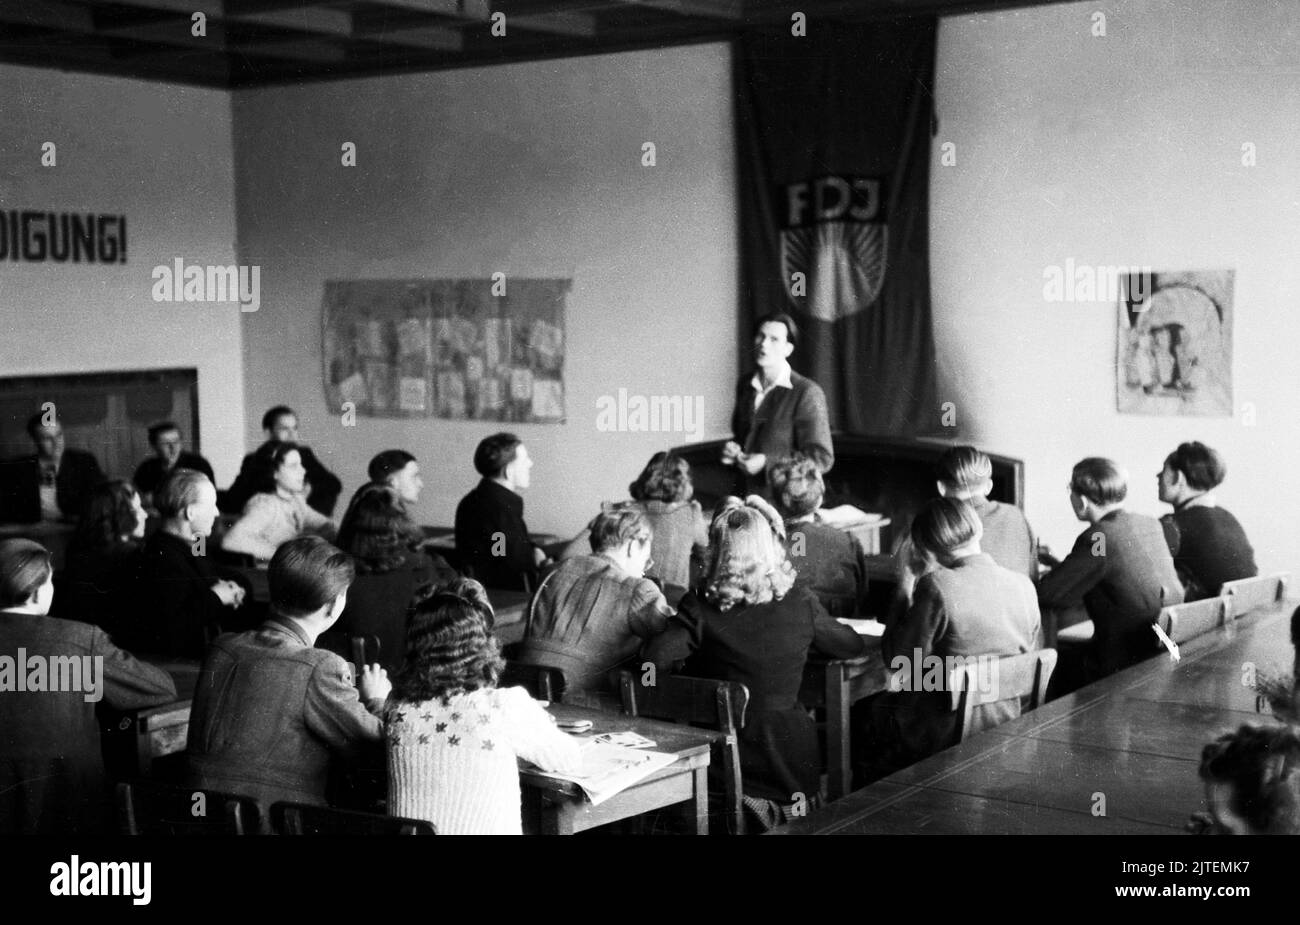 Der Landsitz und die Villa vom früheren Propagandaminister Joseph Goebbels, das Gelände Bogensee bei Wandlitz, wird nun als Hochschule der FDJ genutzt, hier FDJ-Mitglieder bei einer Kaderschulung, Nähe Berlin, Deutschland 1947. Stock Photo